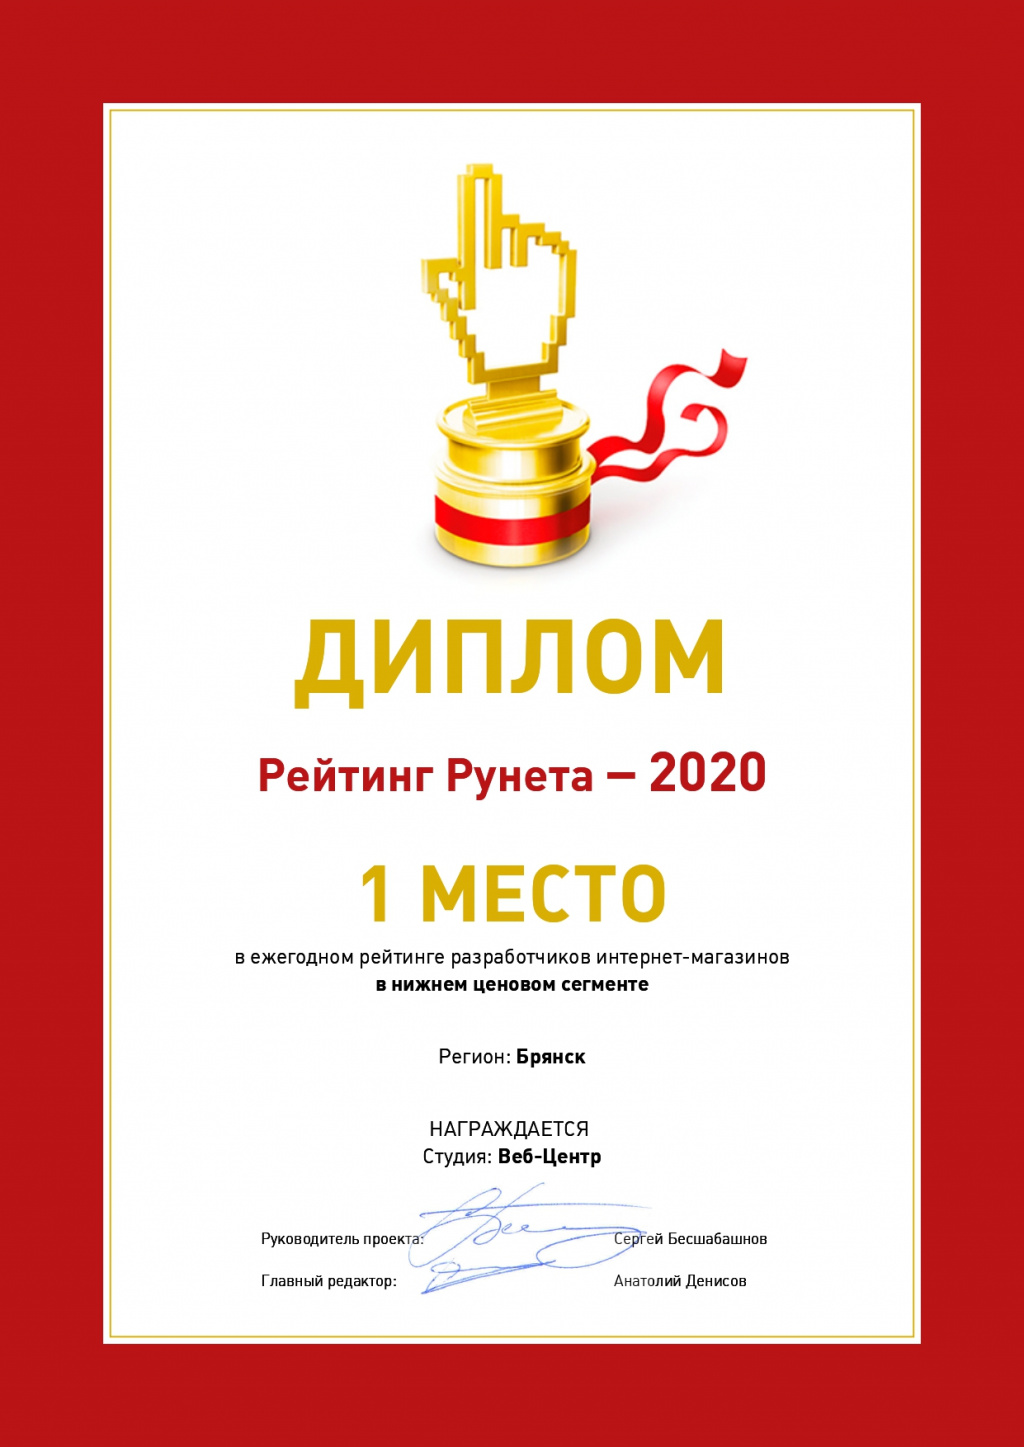 1 МЕСТО в ежегодном рейтинге разработчиков интернет-магазинов в нижнем ценовом сегменте, регион Брянск